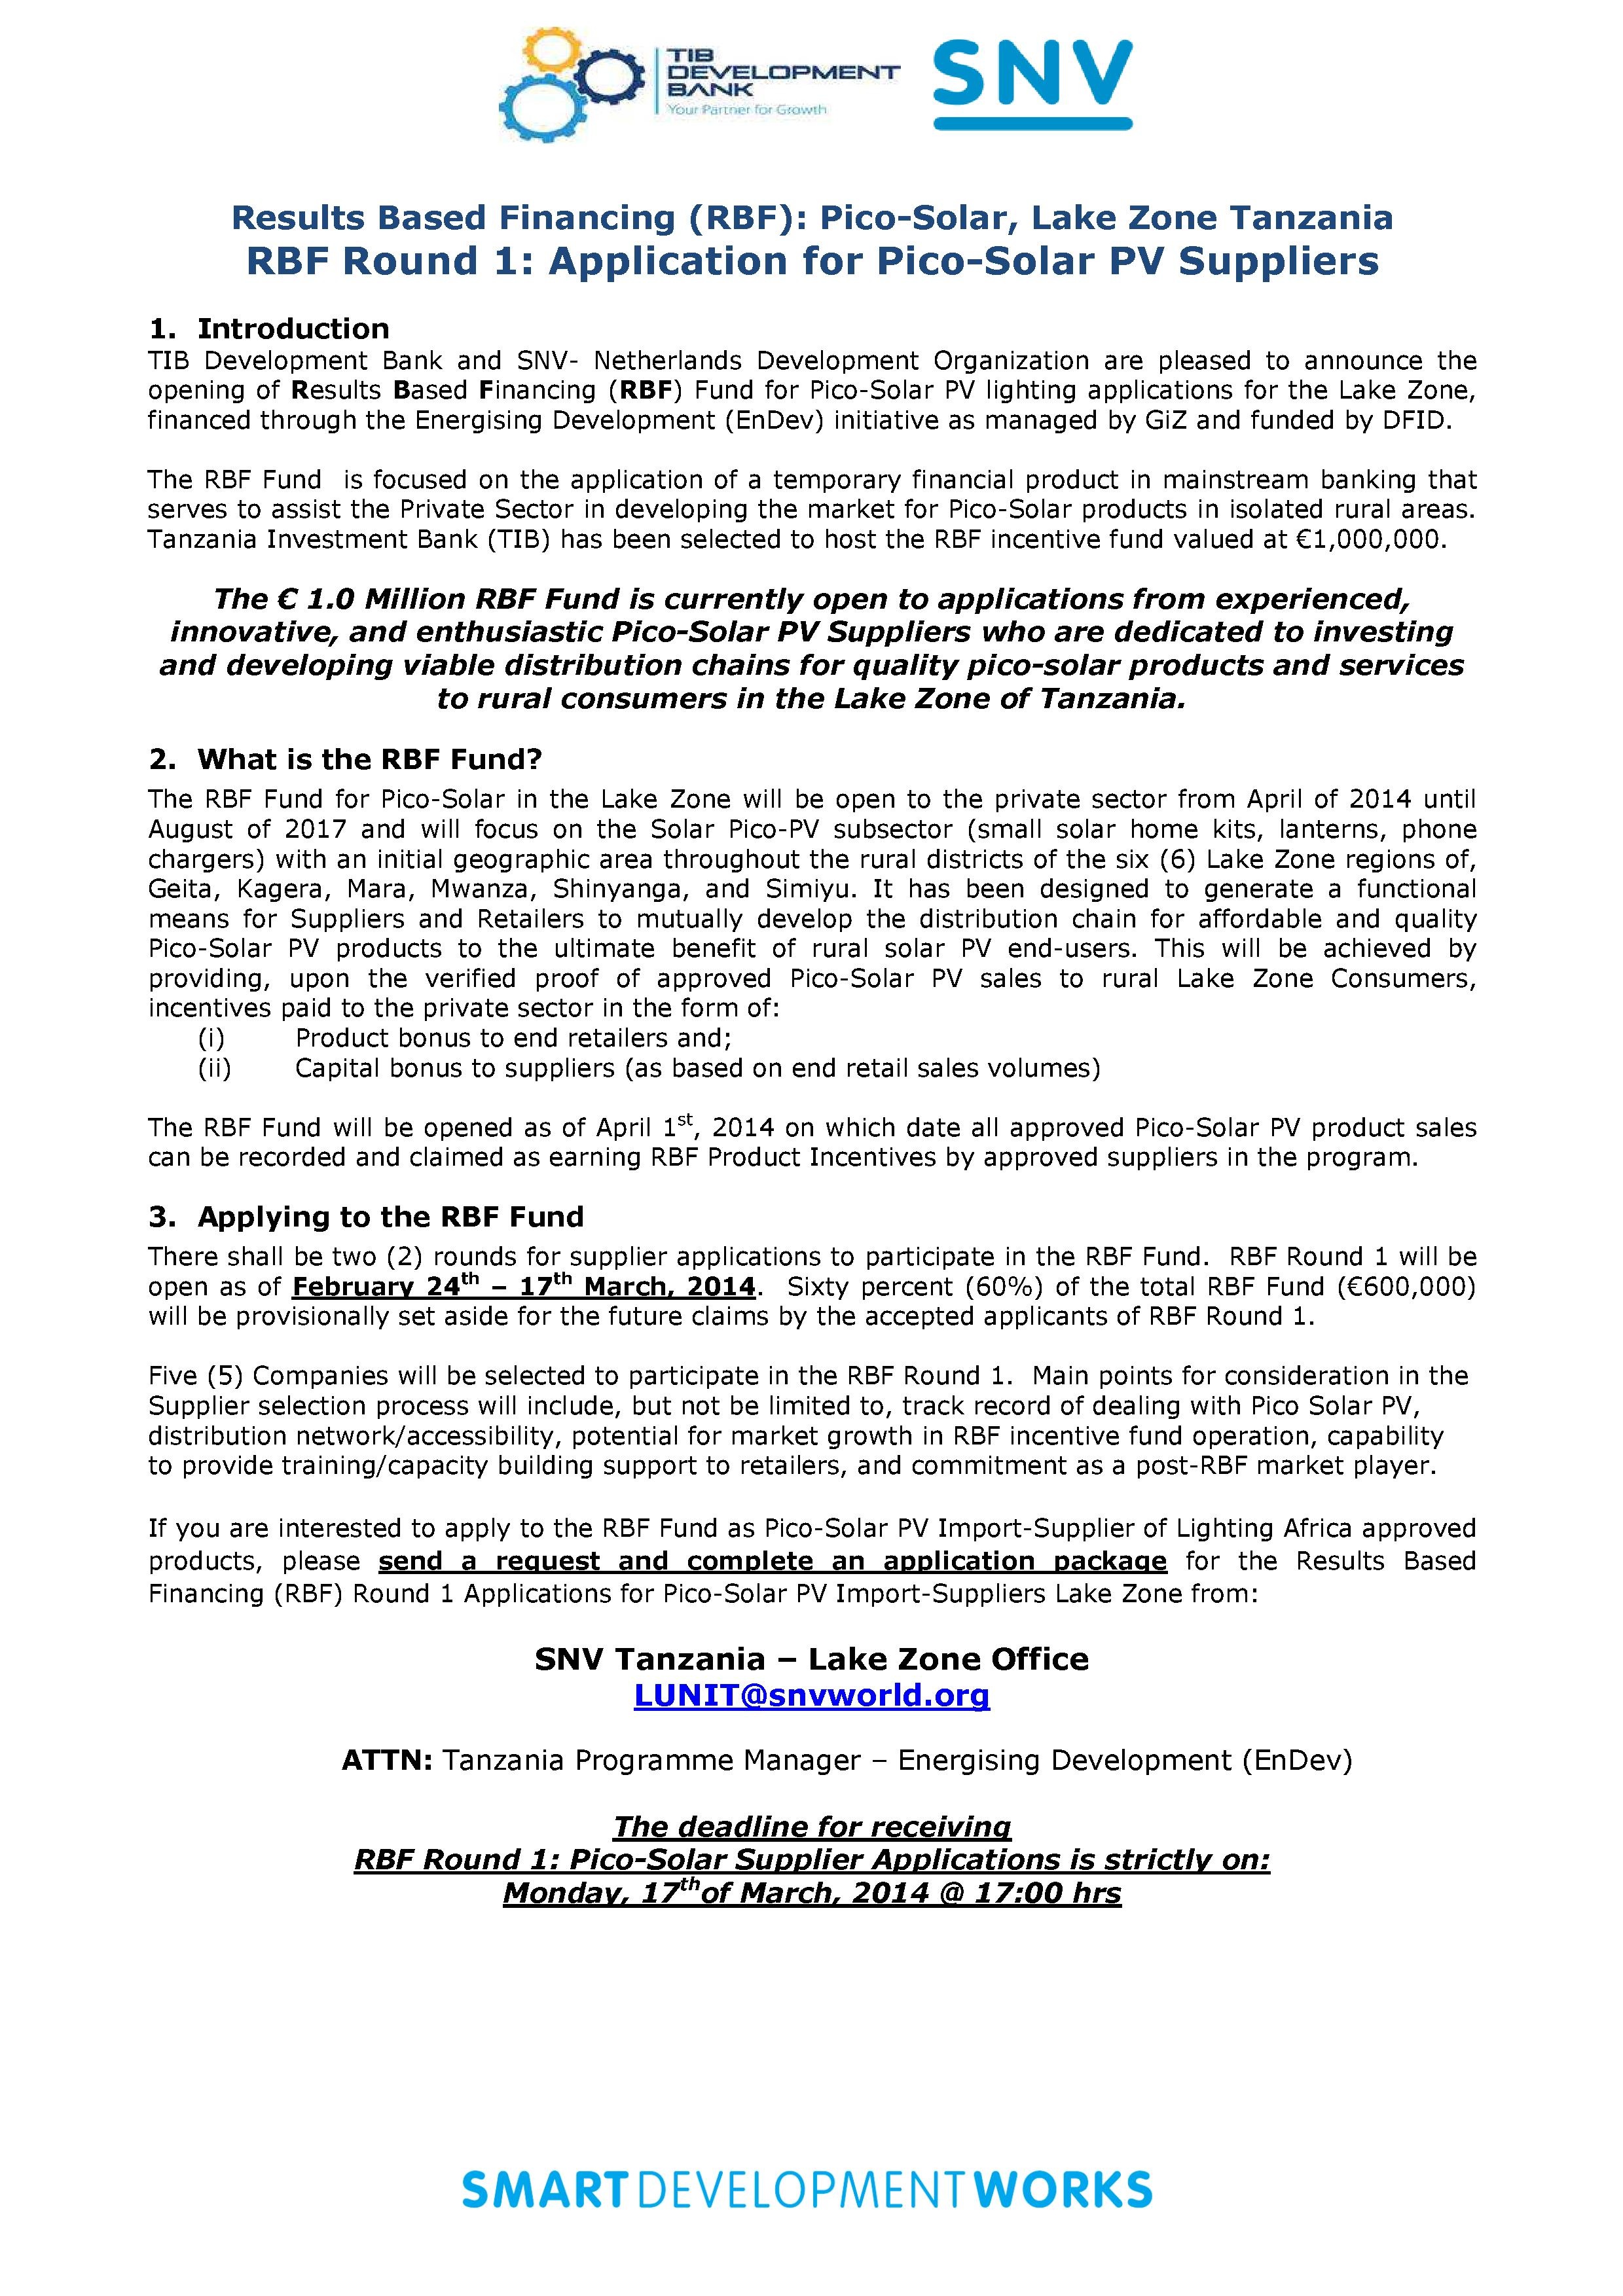 Tanzania Call for Proposals – Lake Zone PicoPV (March 2014)